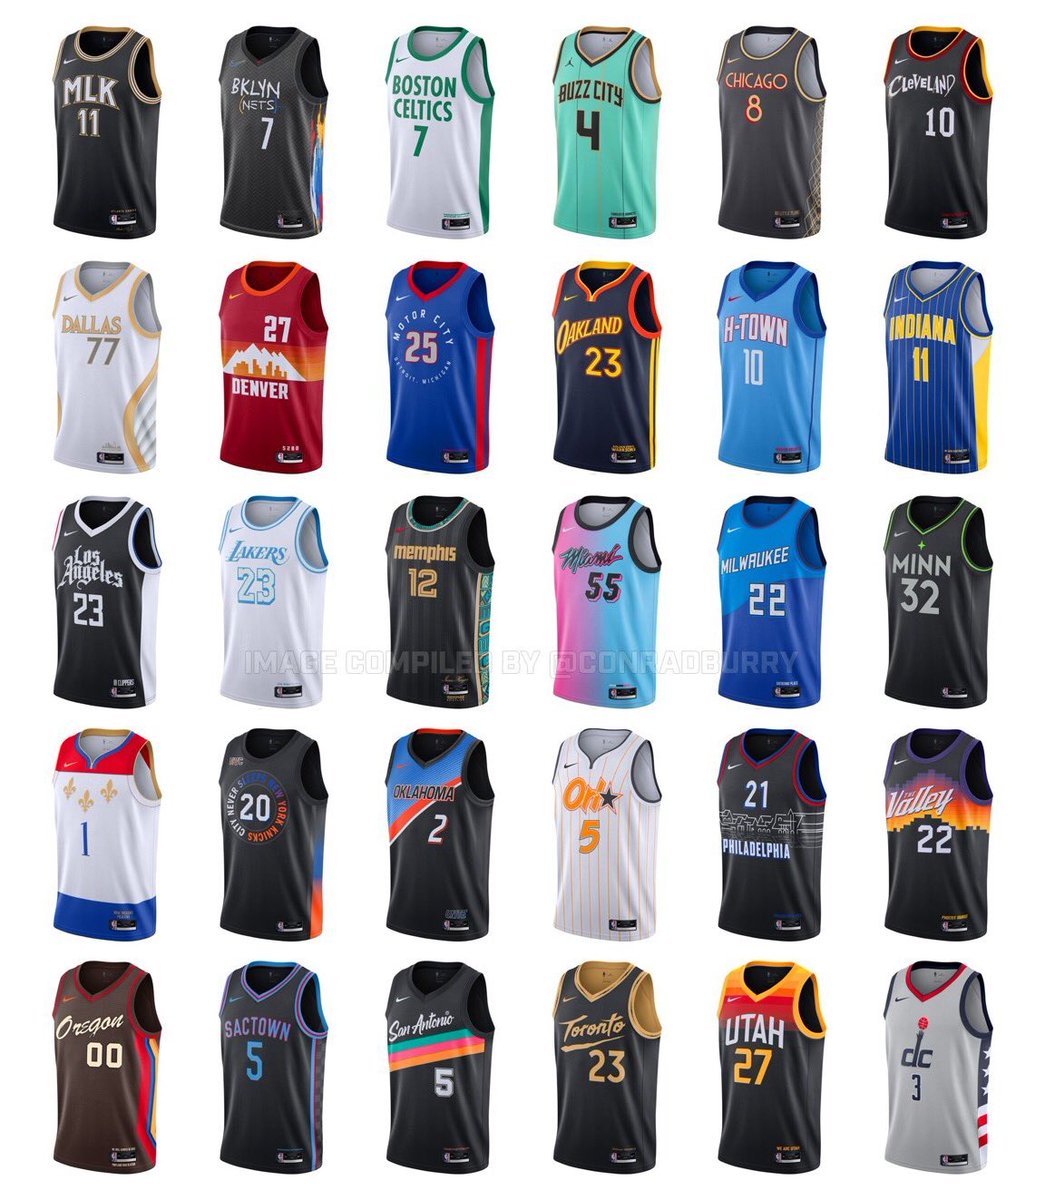 تويتر \ Gigantes del Basket على تويتر: "Todas las camisetas City Edition esta temporada la NBA. ¿Con cuál te quedas? 📷@conradburry https://t.co/1Qqmyl9dF4"